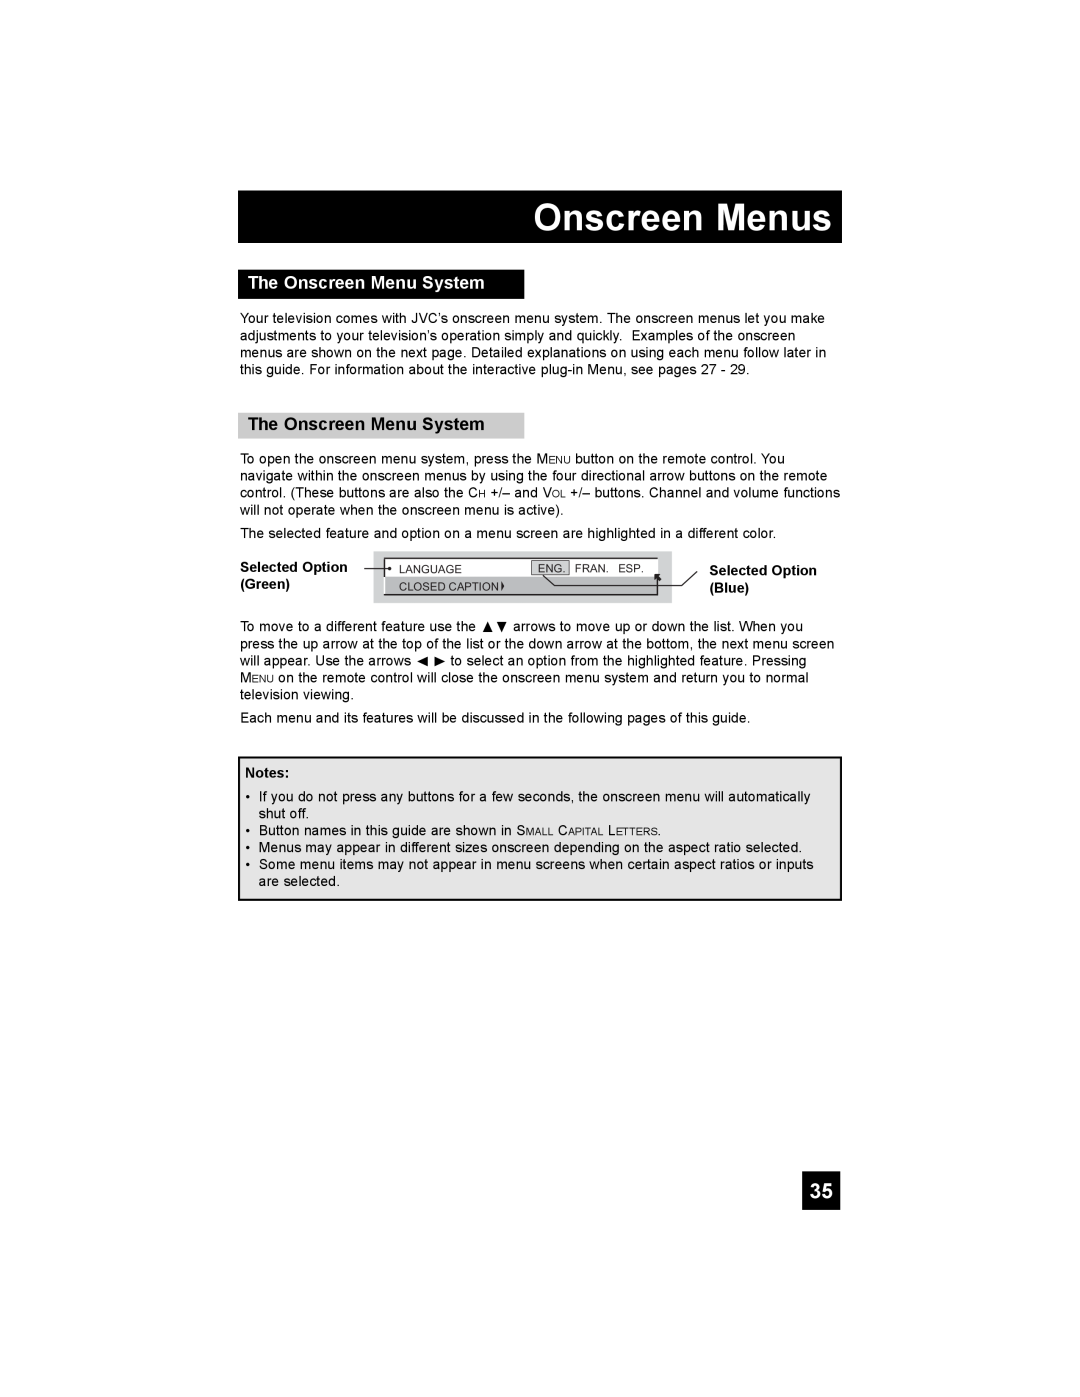 JVC PD-42X776 manual The Onscreen Menu System, Onscreen Menus, Selected Option Green, Selected Option Blue 